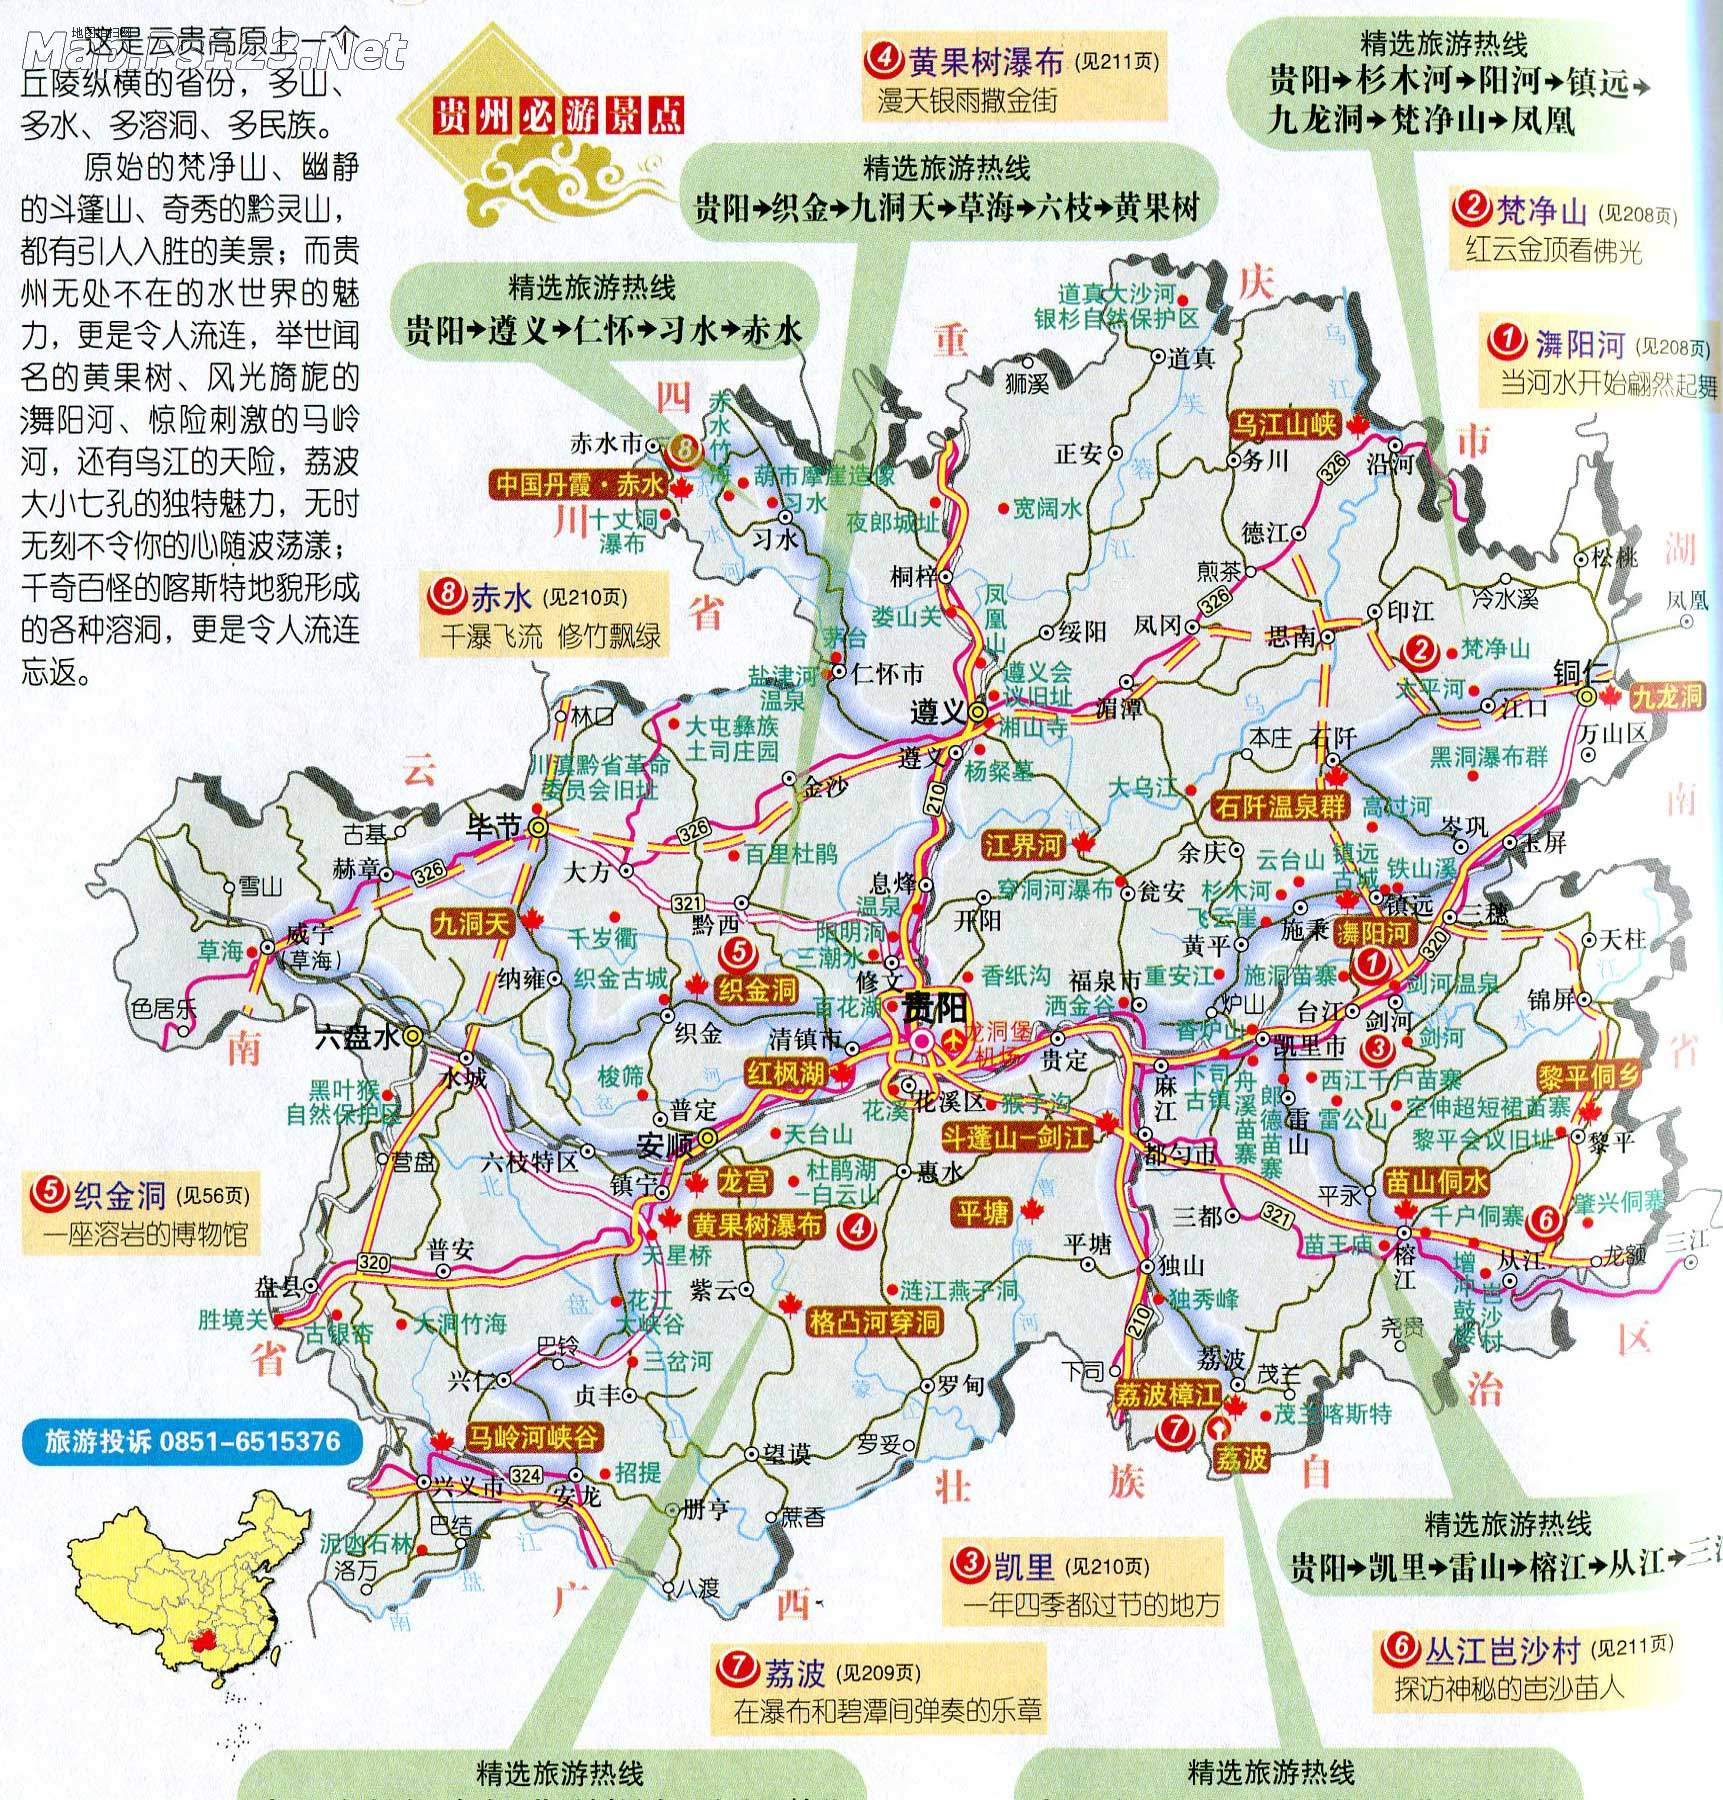 贵州旅游攻略最佳线路 (攻略贵州旅行)